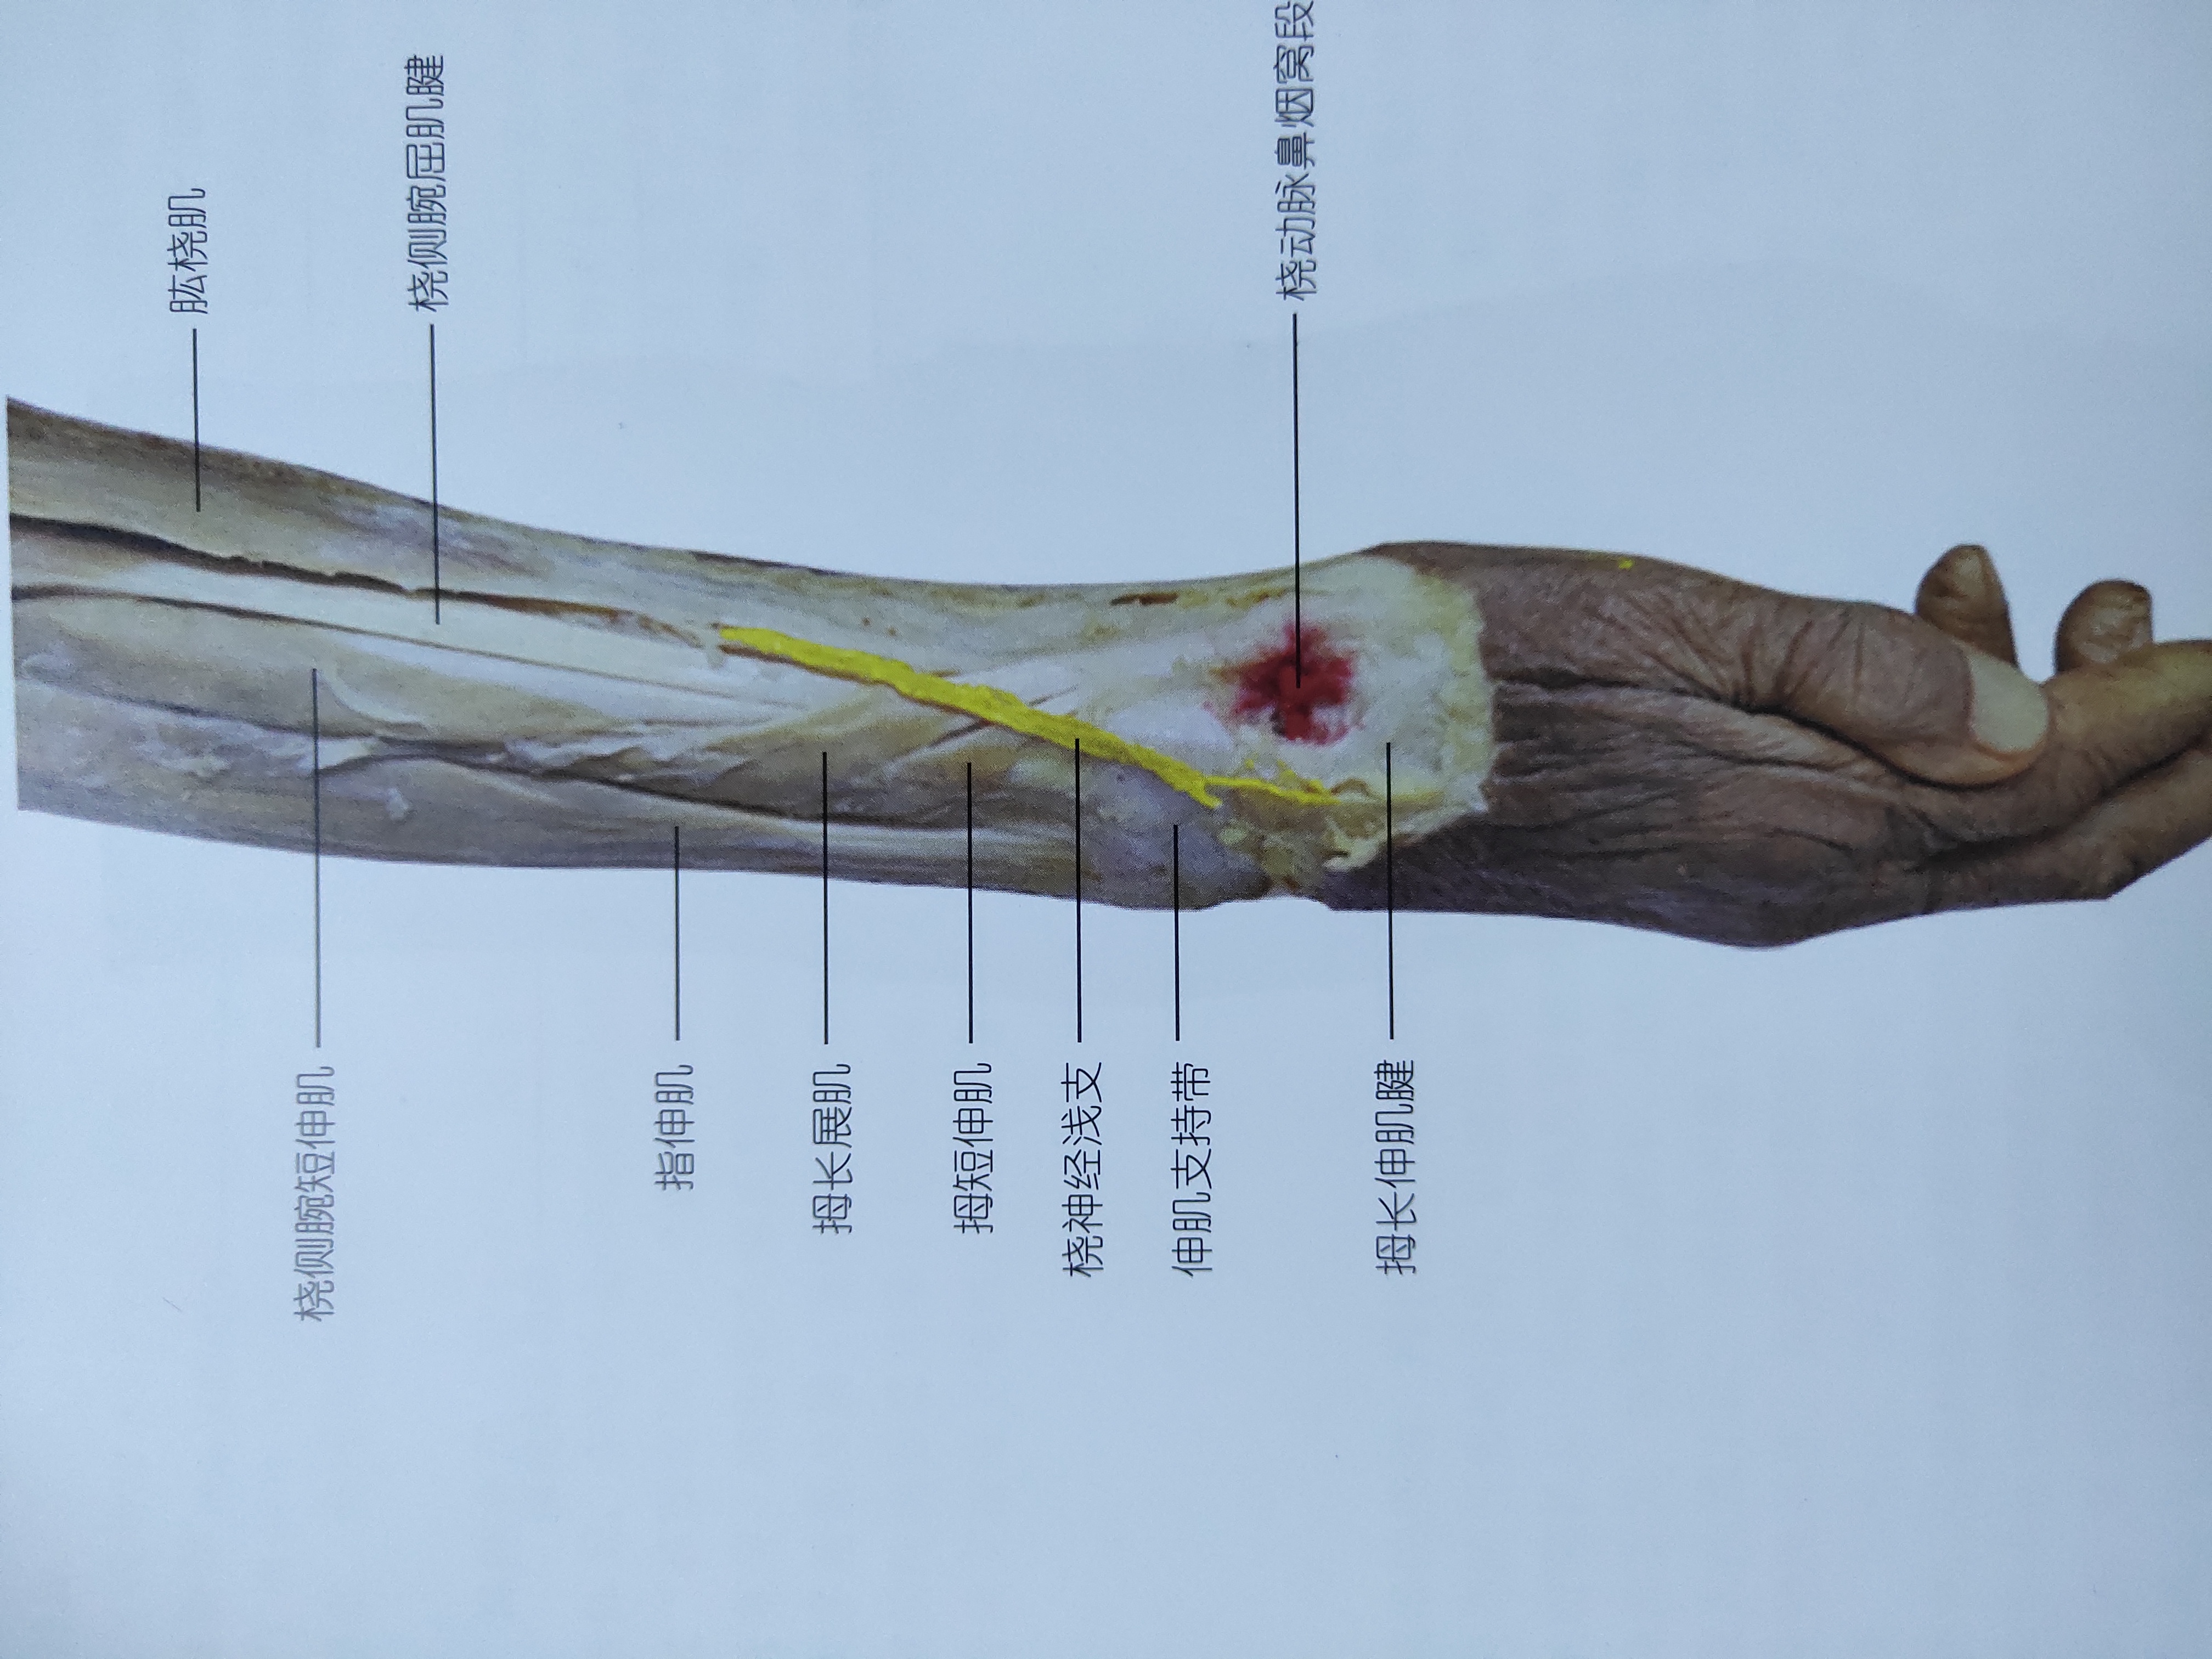 手腕桡骨茎突位置图图片